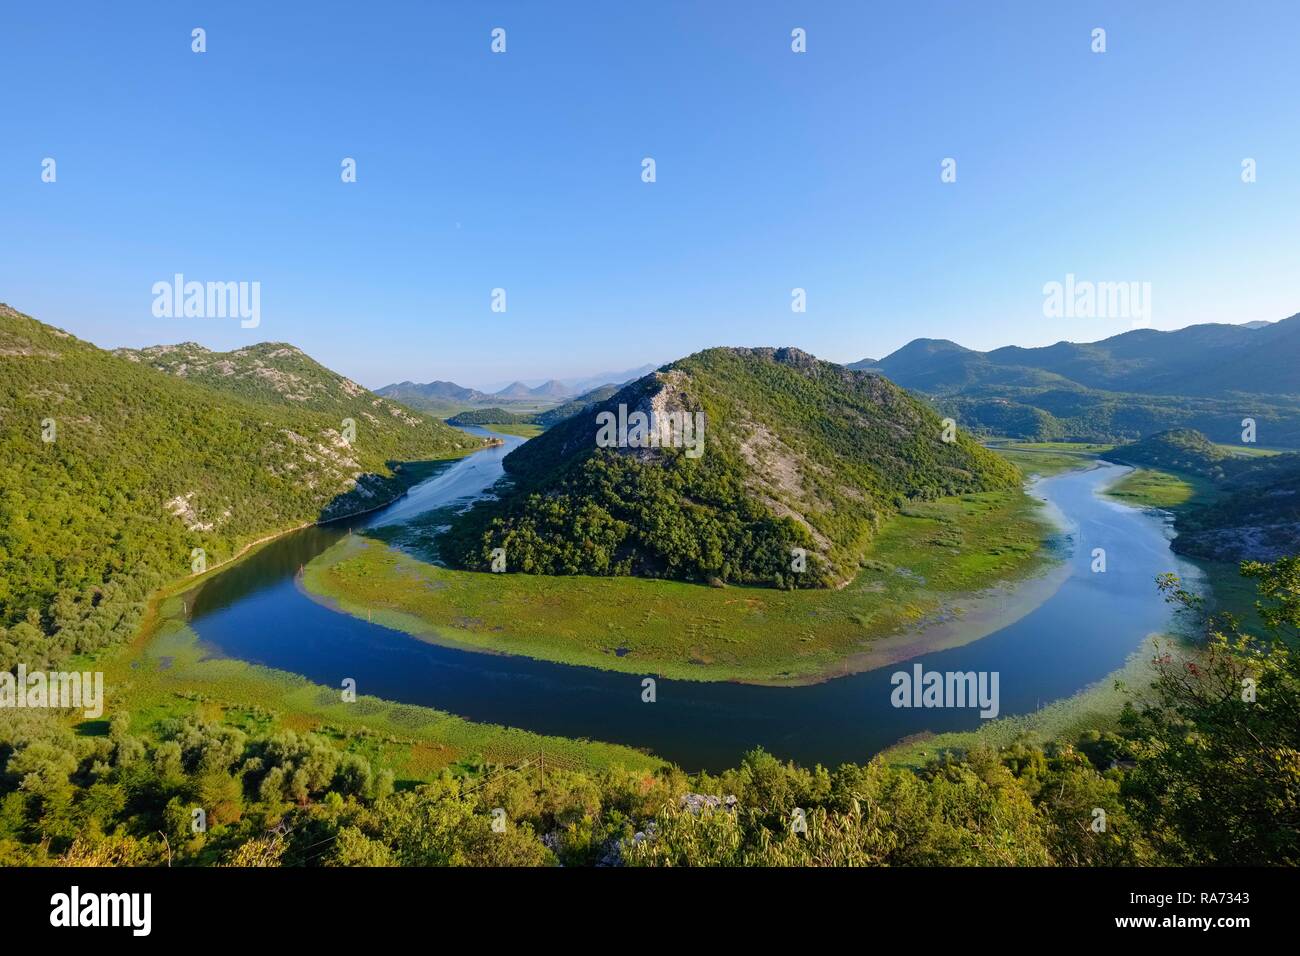 River bend de Rijeka Crnojevica, la rivière vue depuis le point de vue Pavlova Strana, National Park, près de la ville de Cetinje Skutarisee Banque D'Images